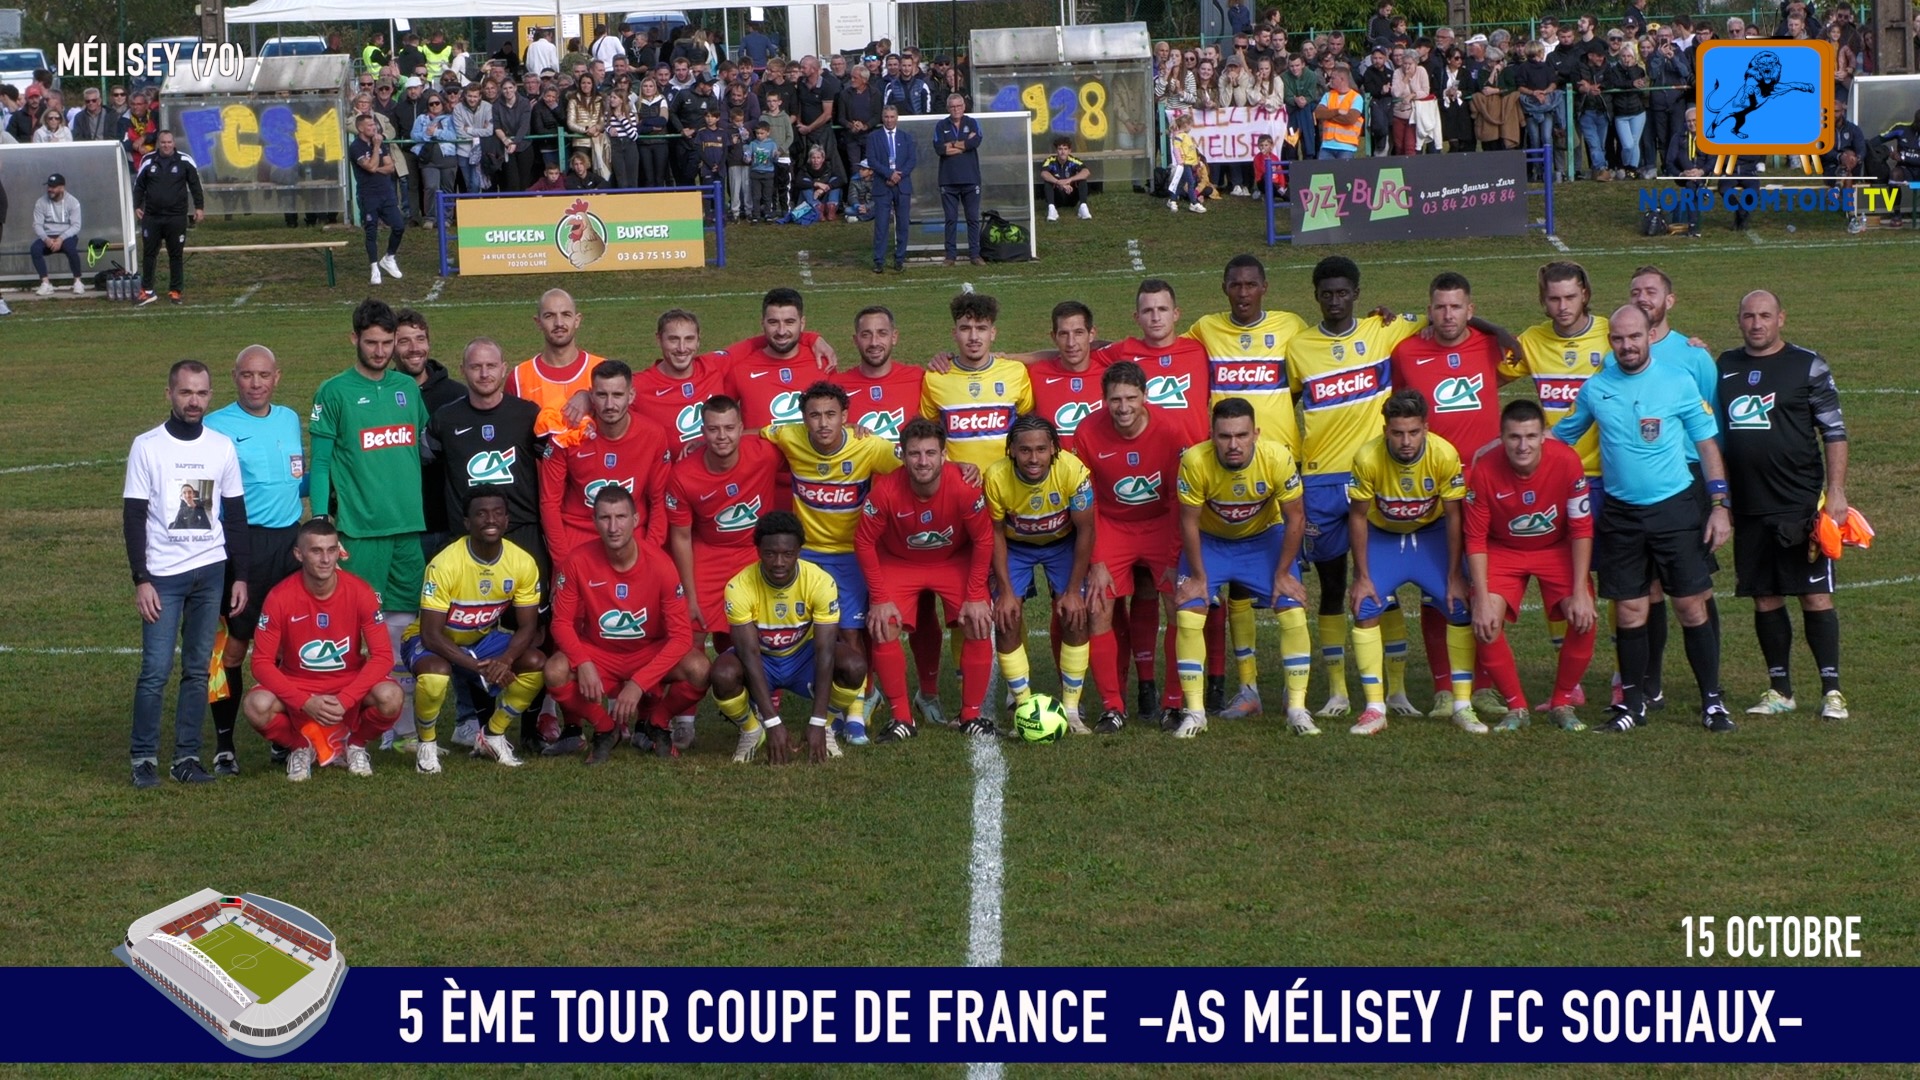 AS MÉLISEY / FC SOCHAUX COUPE DE FRANCE (5 ÈME TOUR)